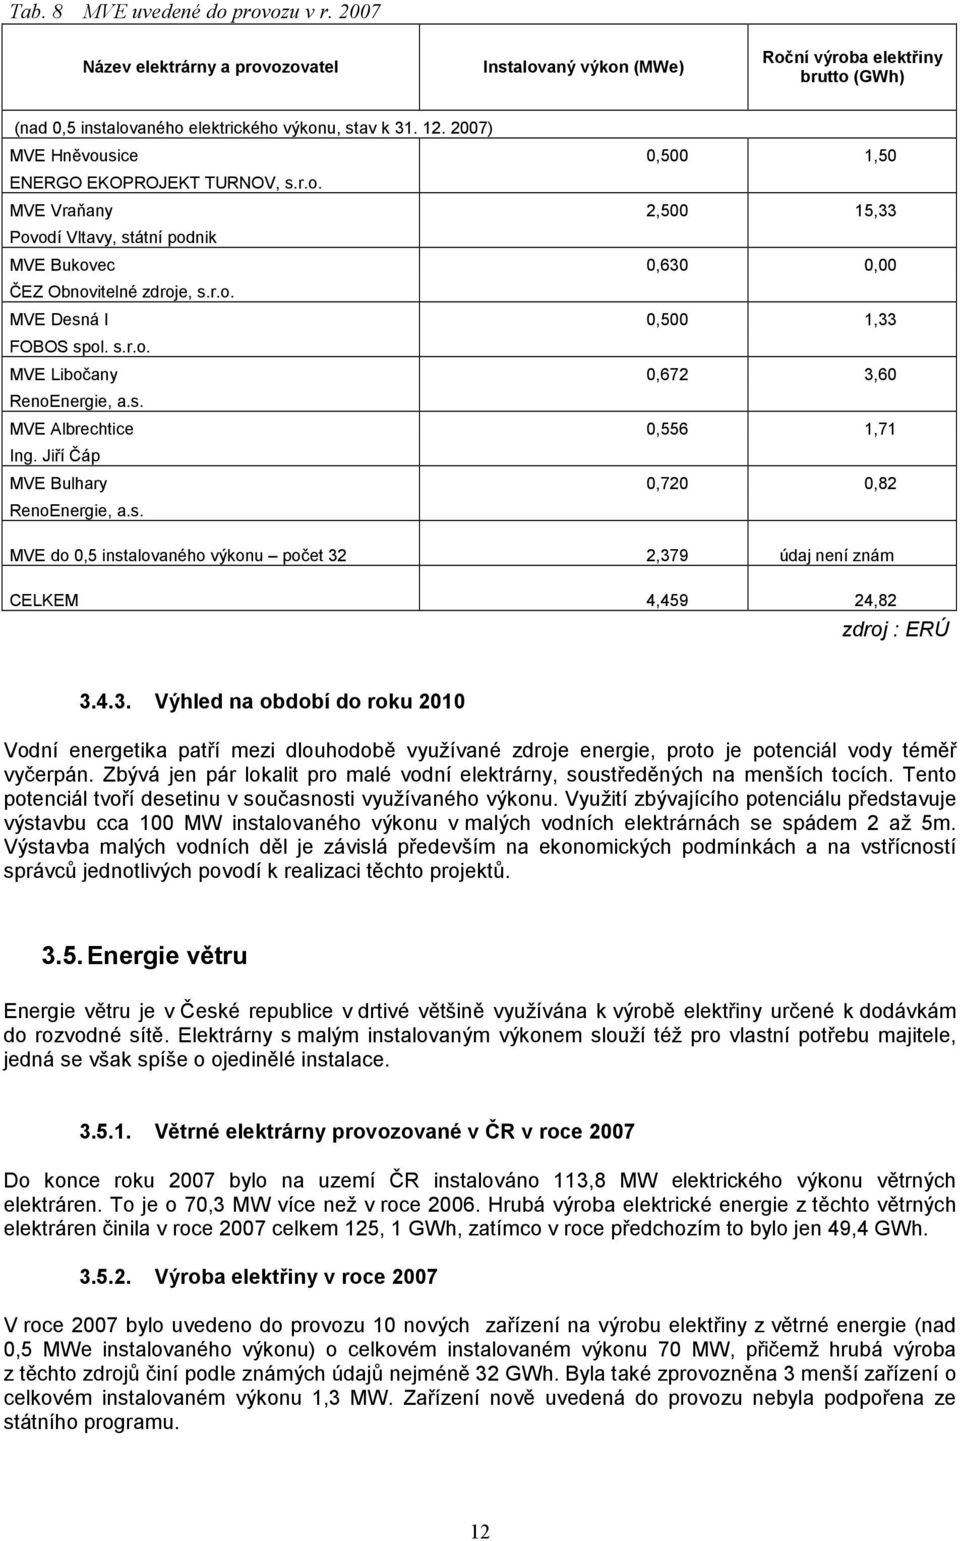 s.r.o. MVE Libočany 0,672 3,60 RenoEnergie, a.s. MVE Albrechtice 0,556 1,71 Ing. Jiří Čáp MVE Bulhary 0,720 0,82 RenoEnergie, a.s. MVE do 0,5 instalovaného výkonu počet 32 2,379 údaj není znám CELKEM 4,459 24,82 zdroj : ERÚ 3.